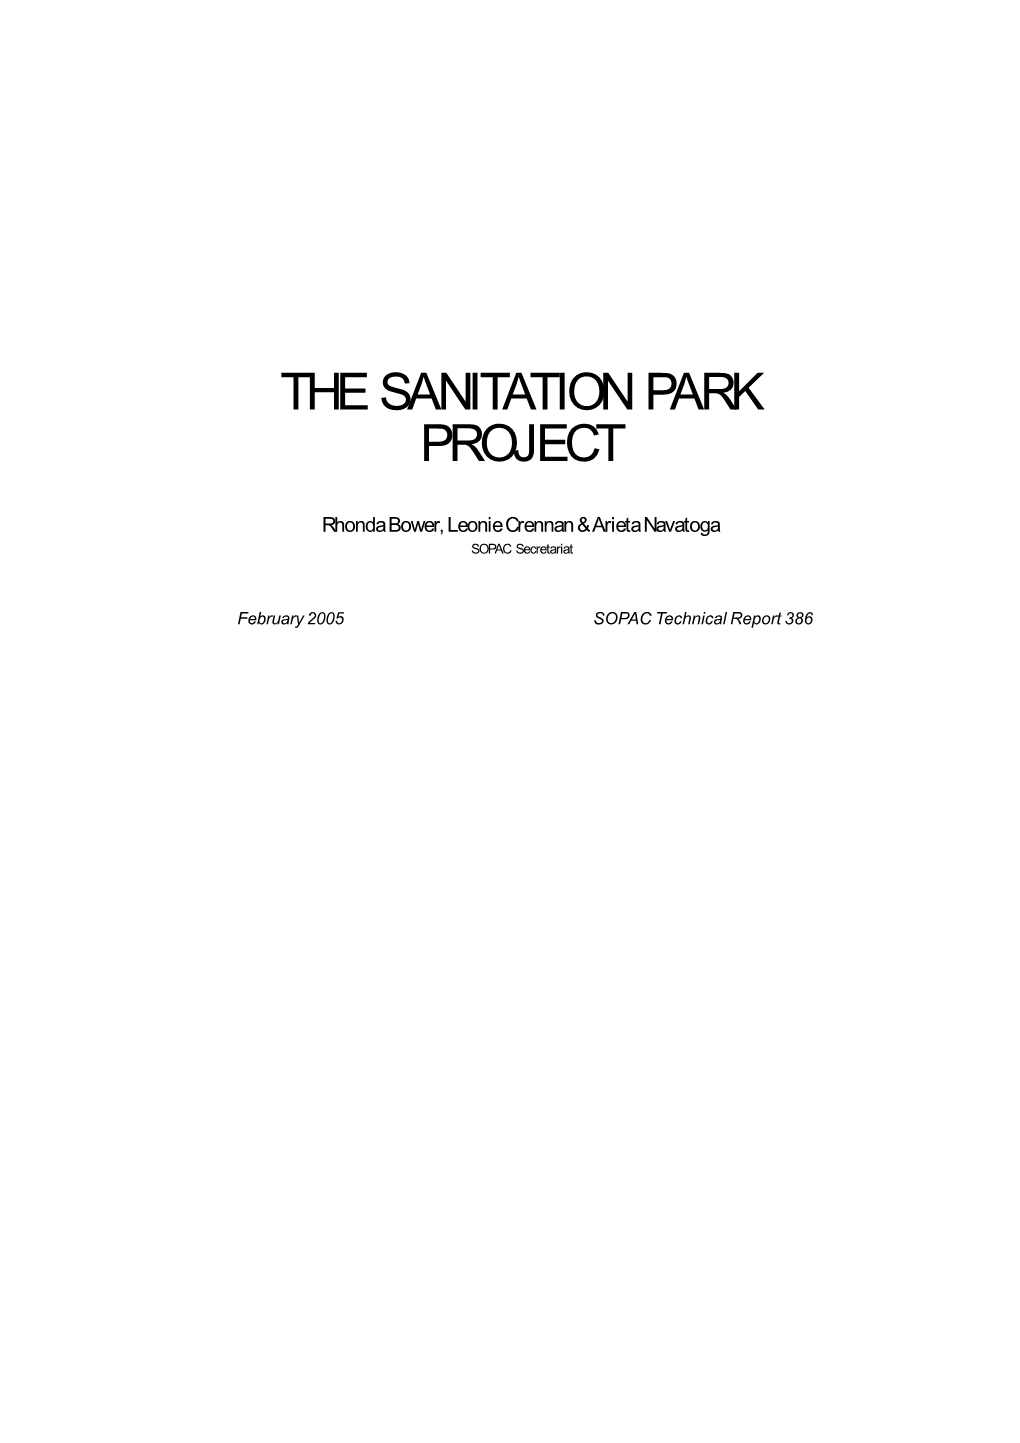 The Sanitation Park Project